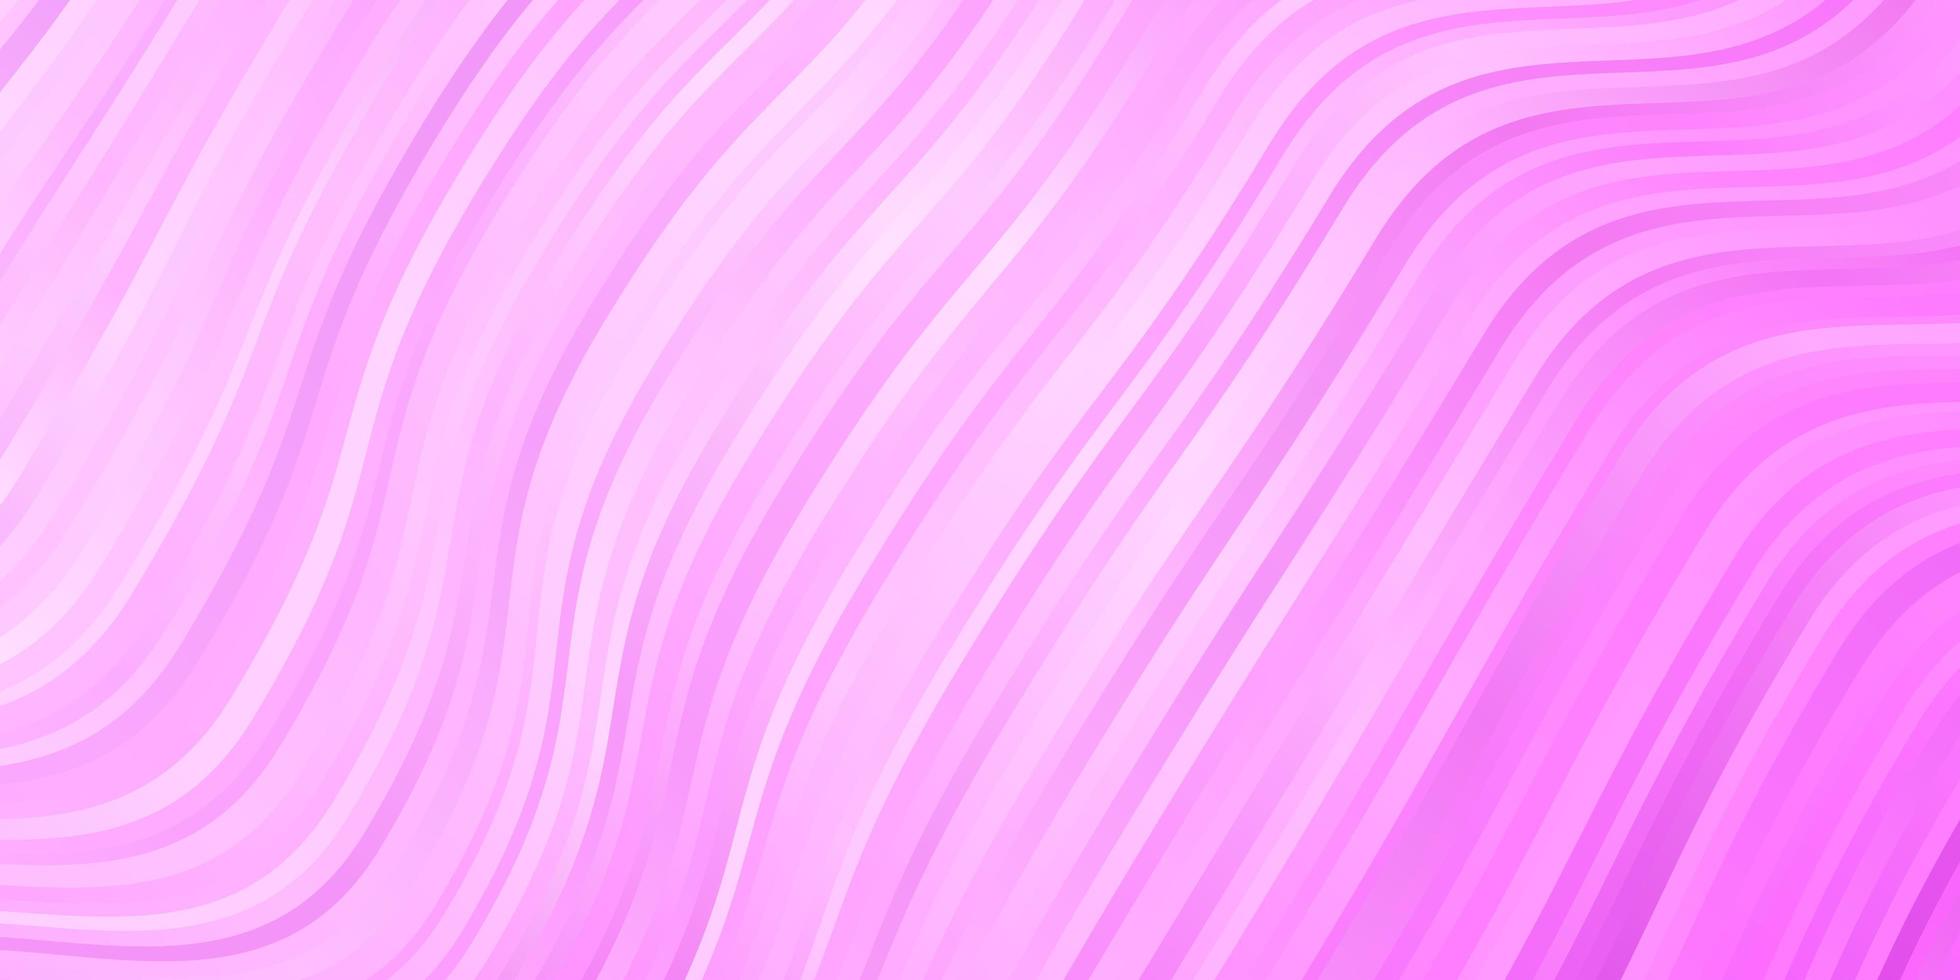 pano de fundo vector rosa claro com arco circular.